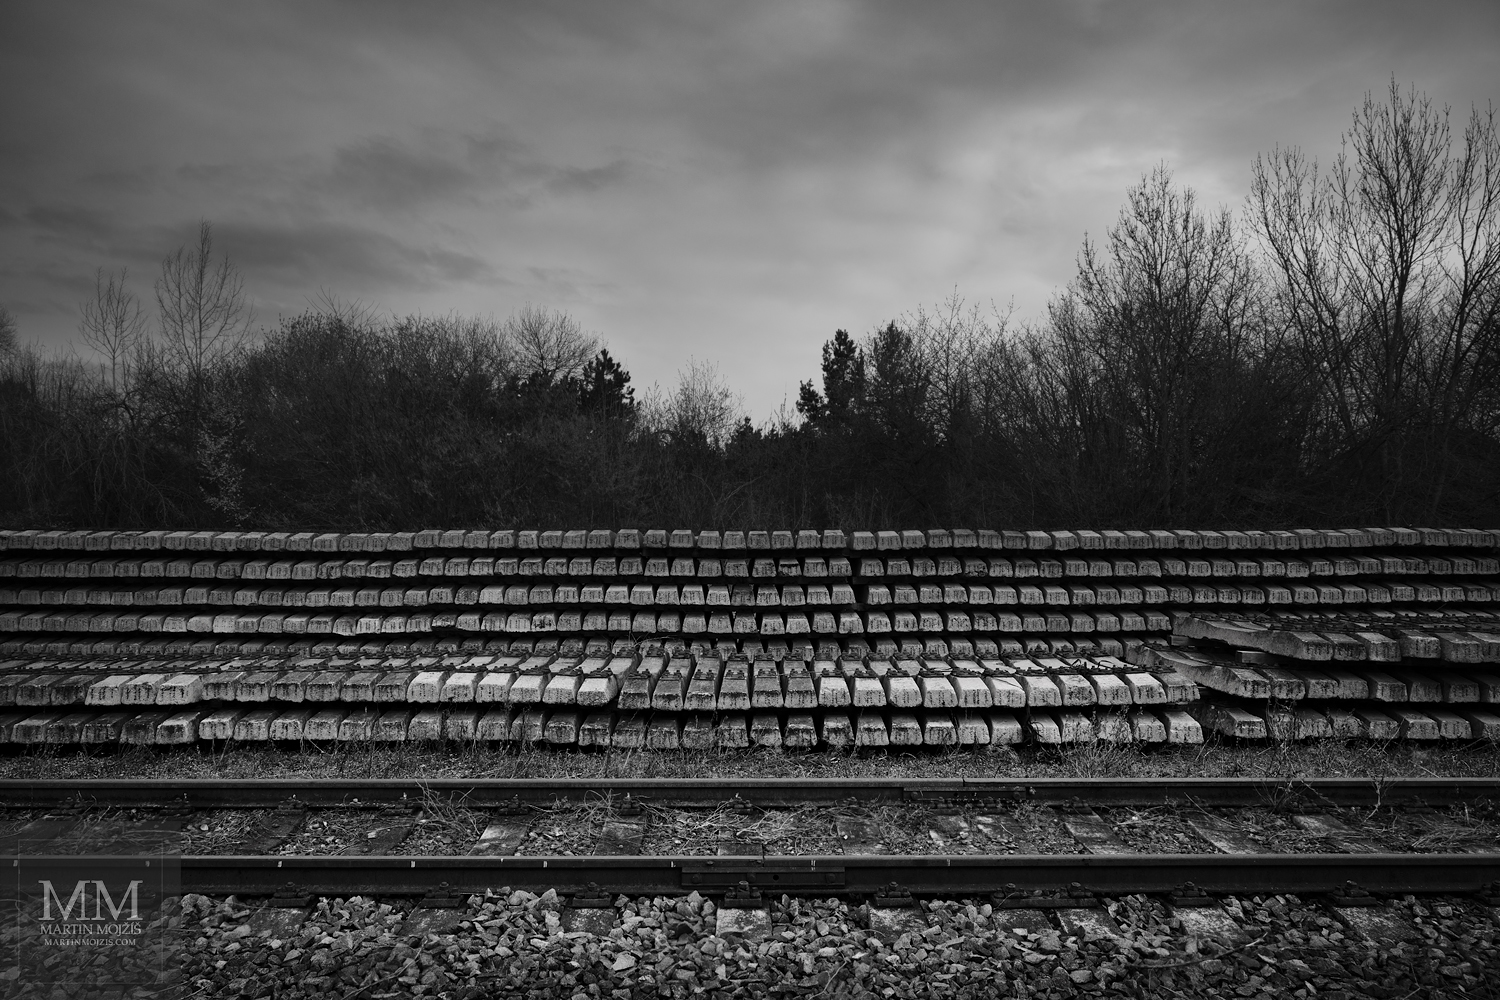 Mnoho železničních pražců vedle kolejí. Umělecká černobílá fotografie s názvem MNOHO PRAŽCŮ. Fotograf Martin Mojžíš.